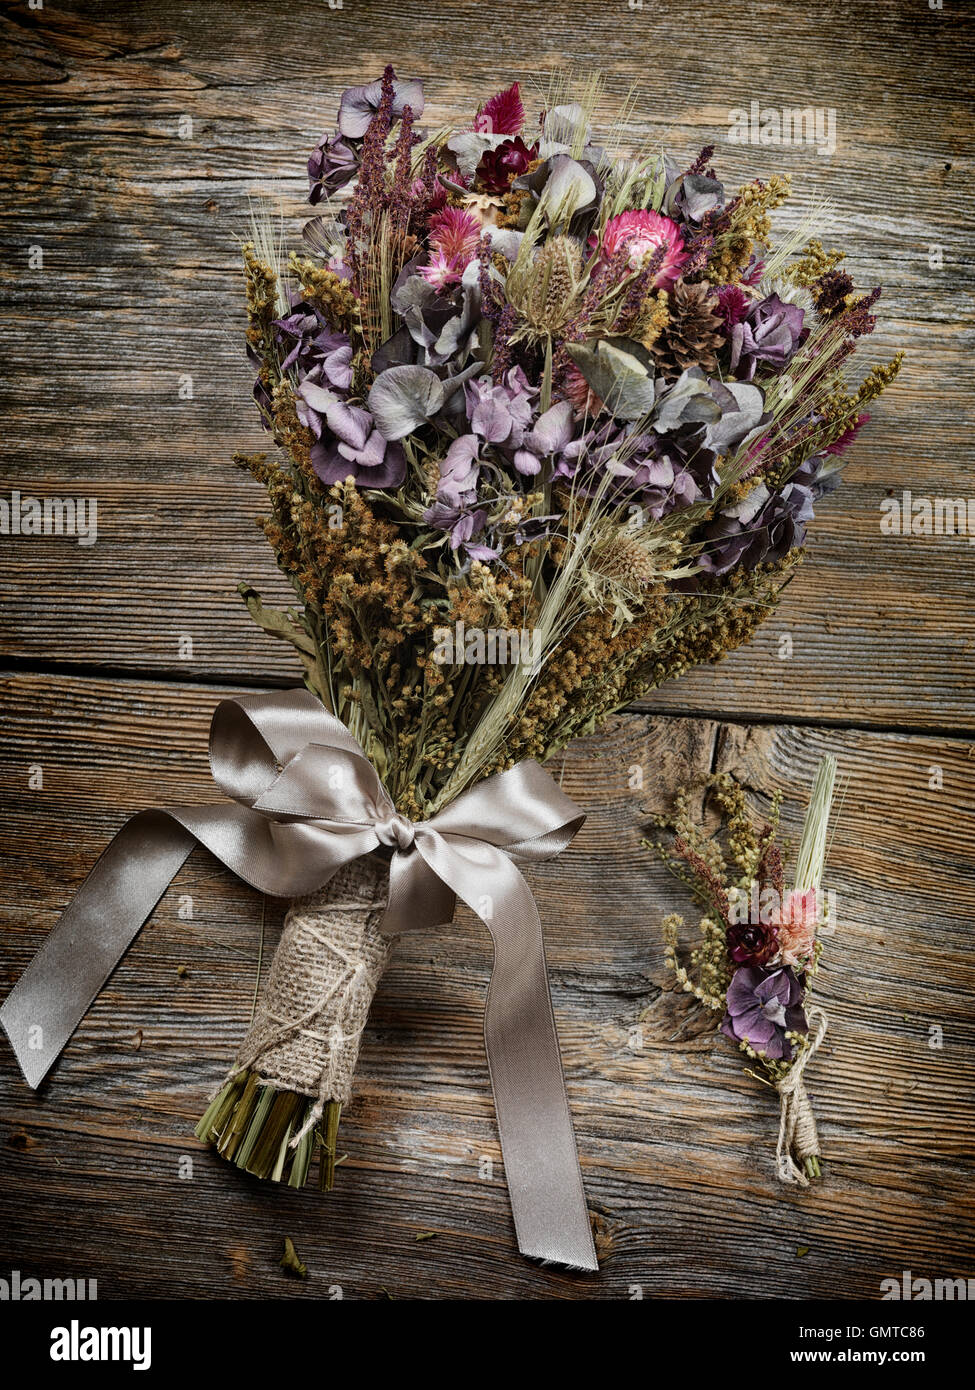 Paese rustico bouquet nuziali e boutonniere fatta di essiccato selvatica del campo dei fiori, artistico still life Foto Stock